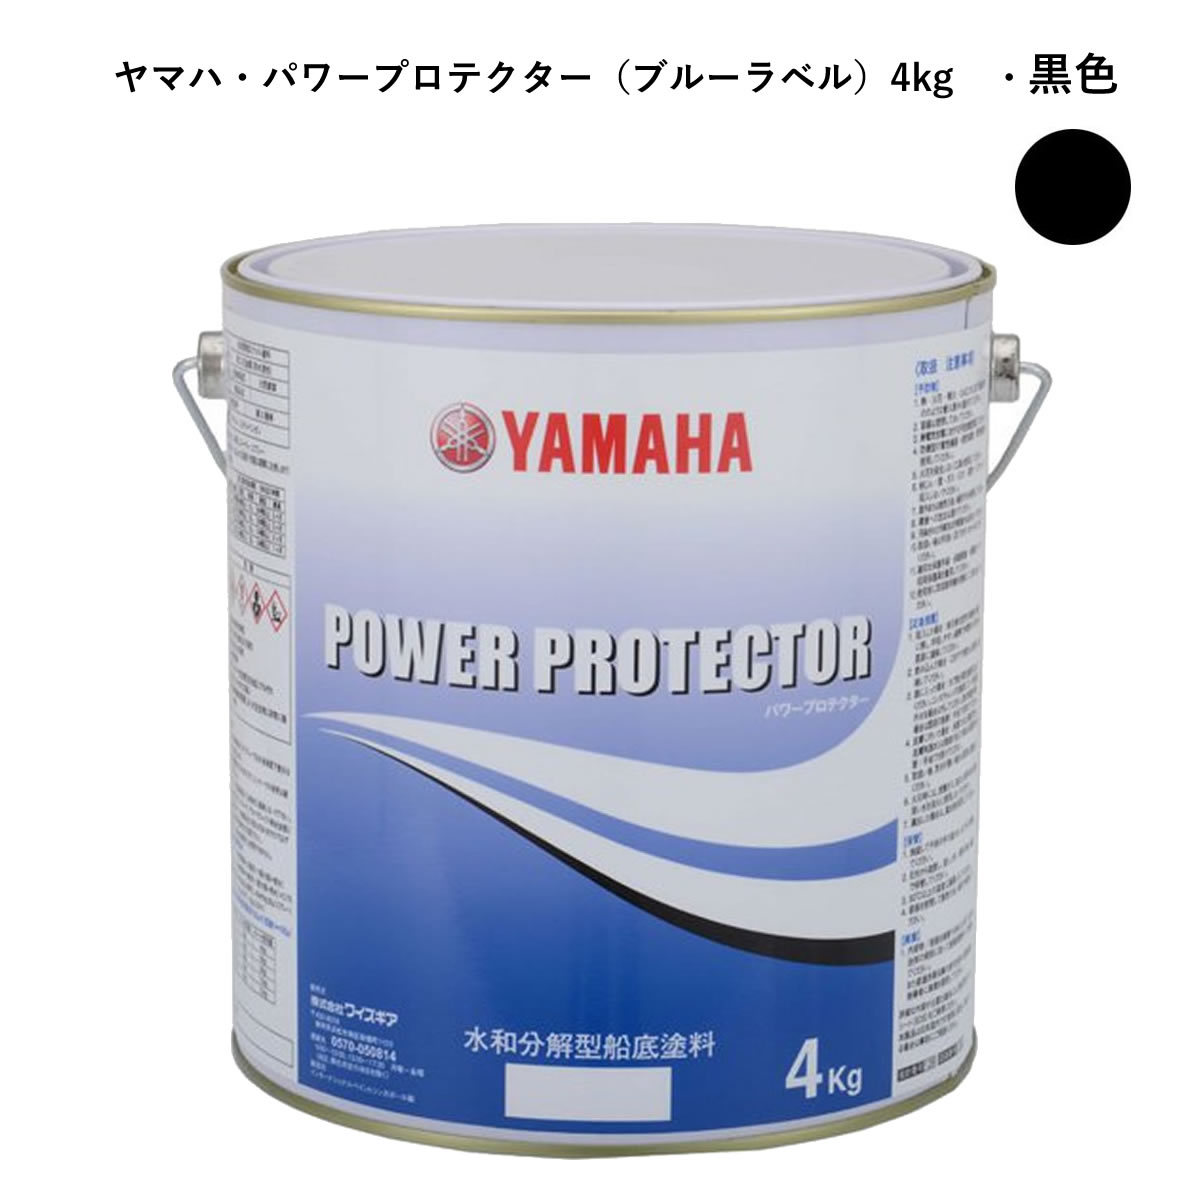  Yamaha днище судна краска чёрный цвет 4kg power protector синий жестяная банка для собственного потребления QW6-NIPY16008